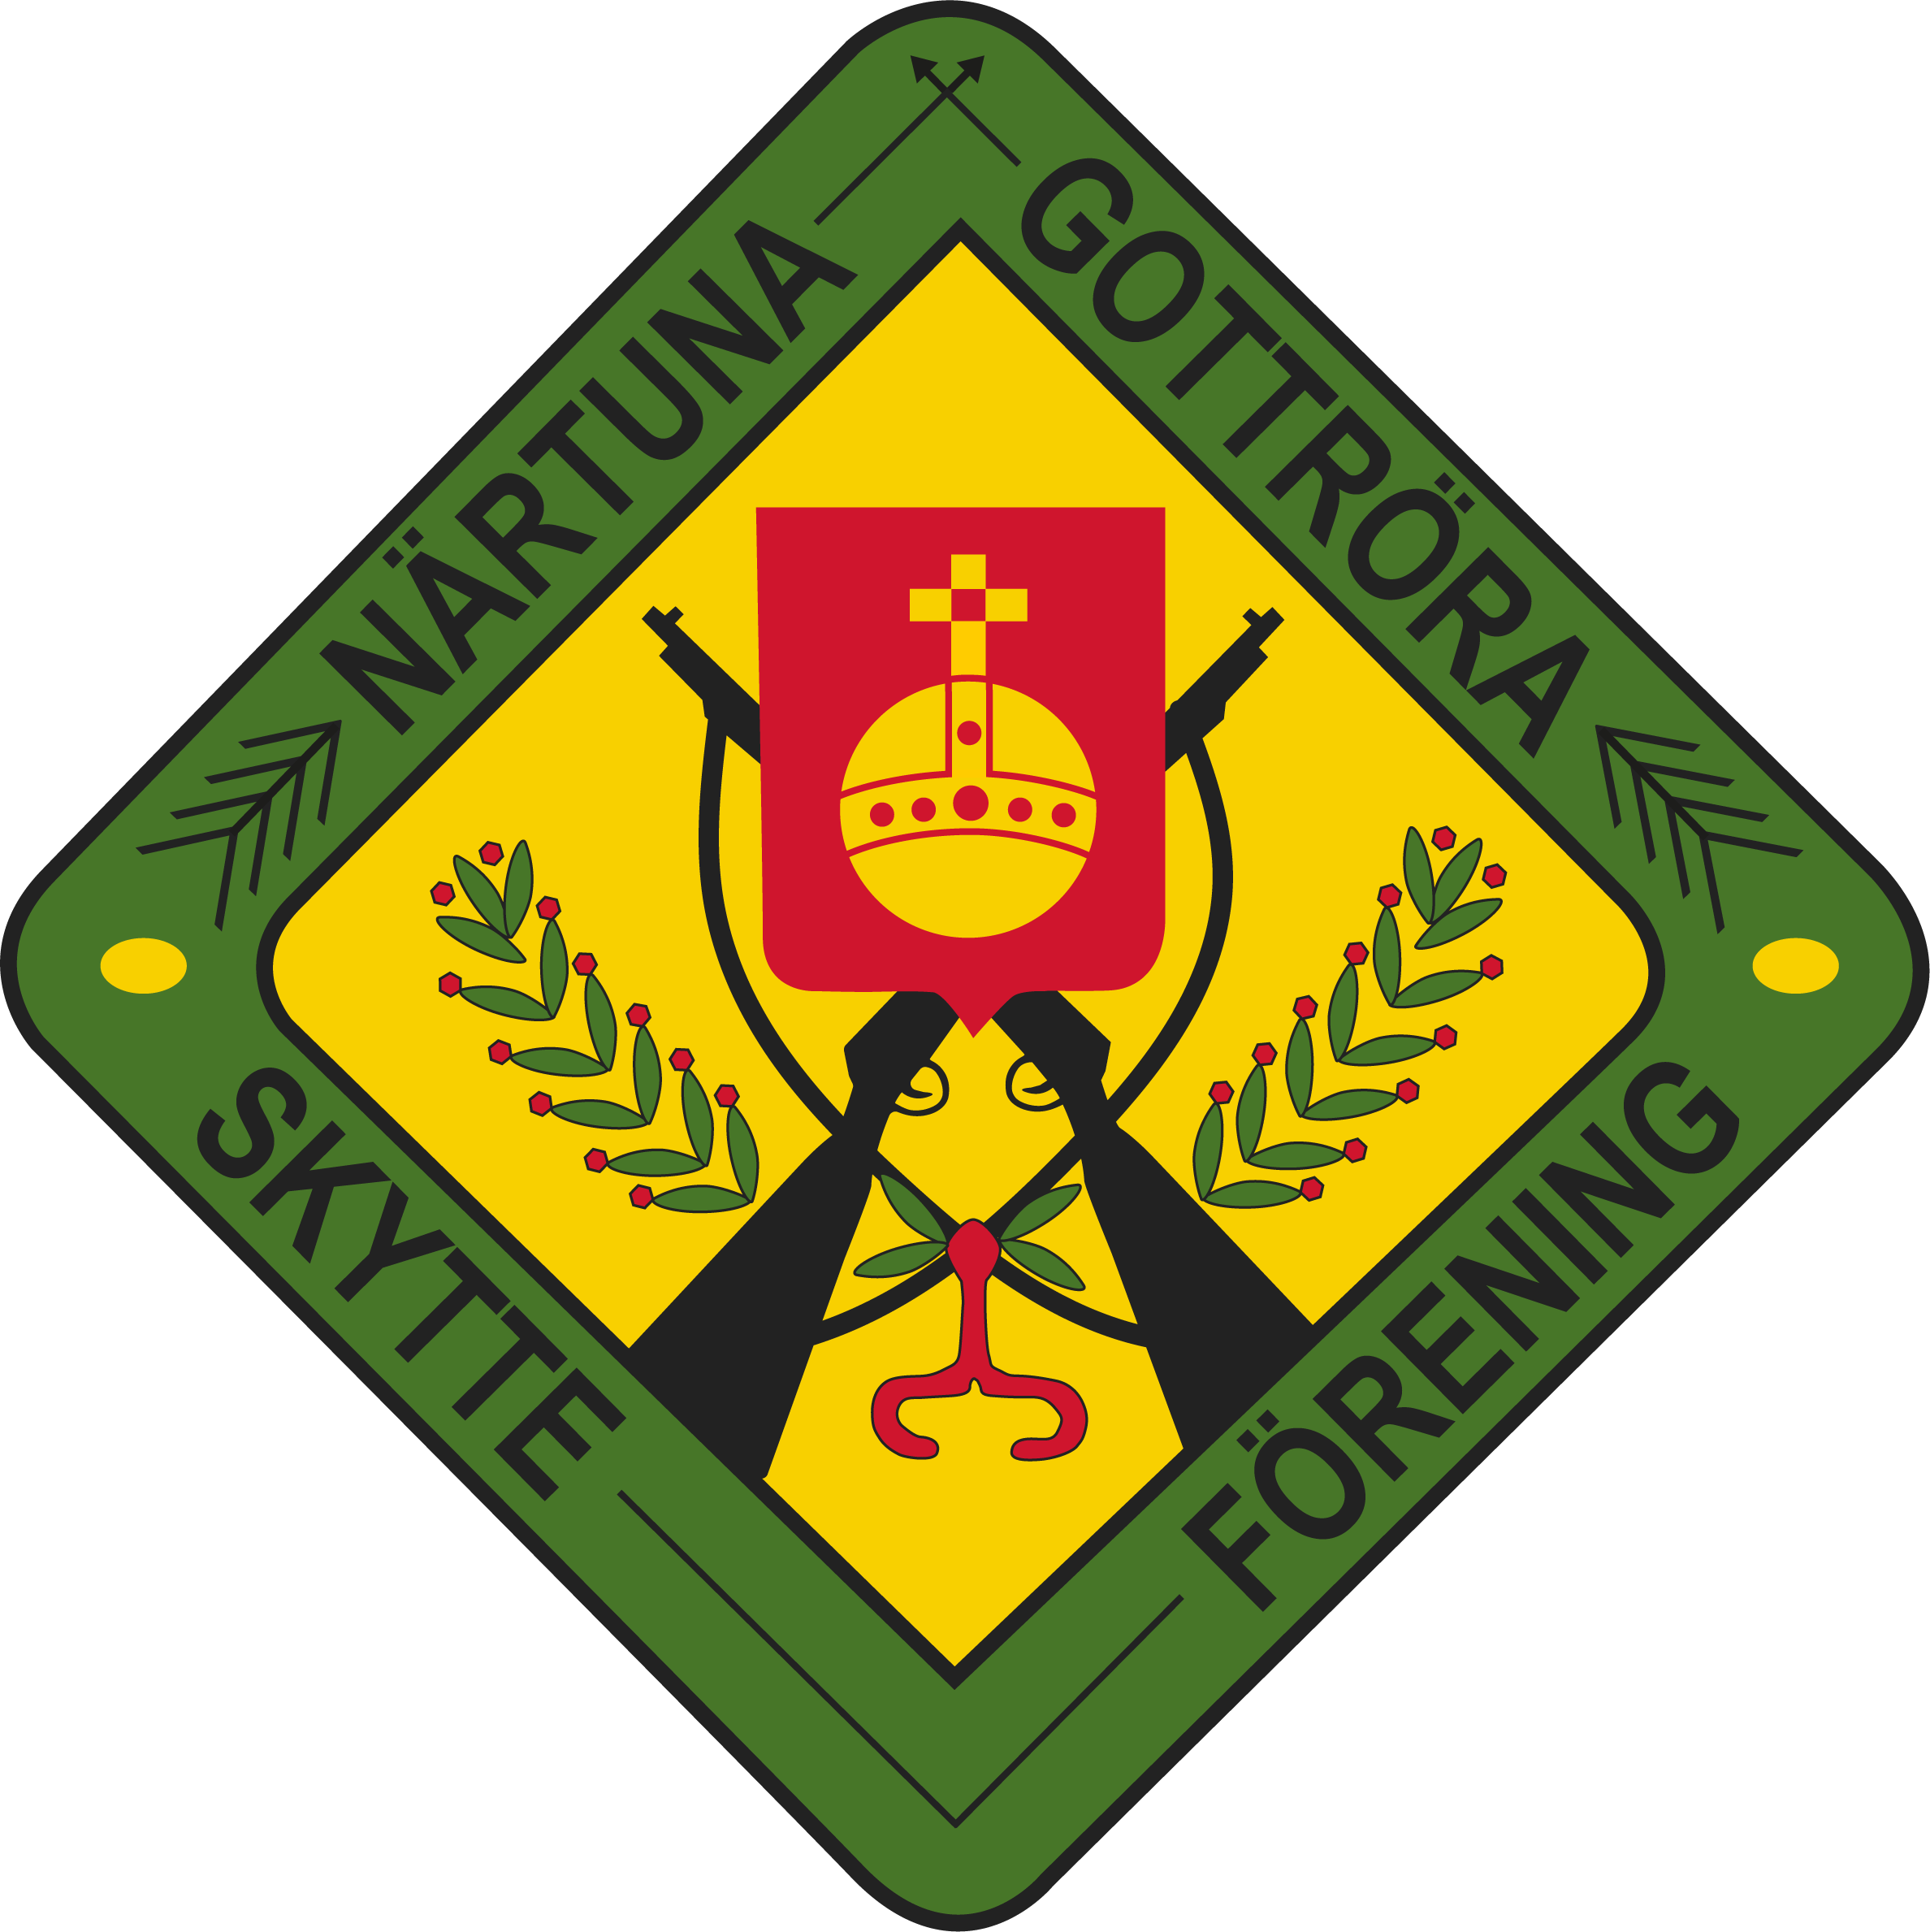 Närtuna-Gottröra Skytteförening